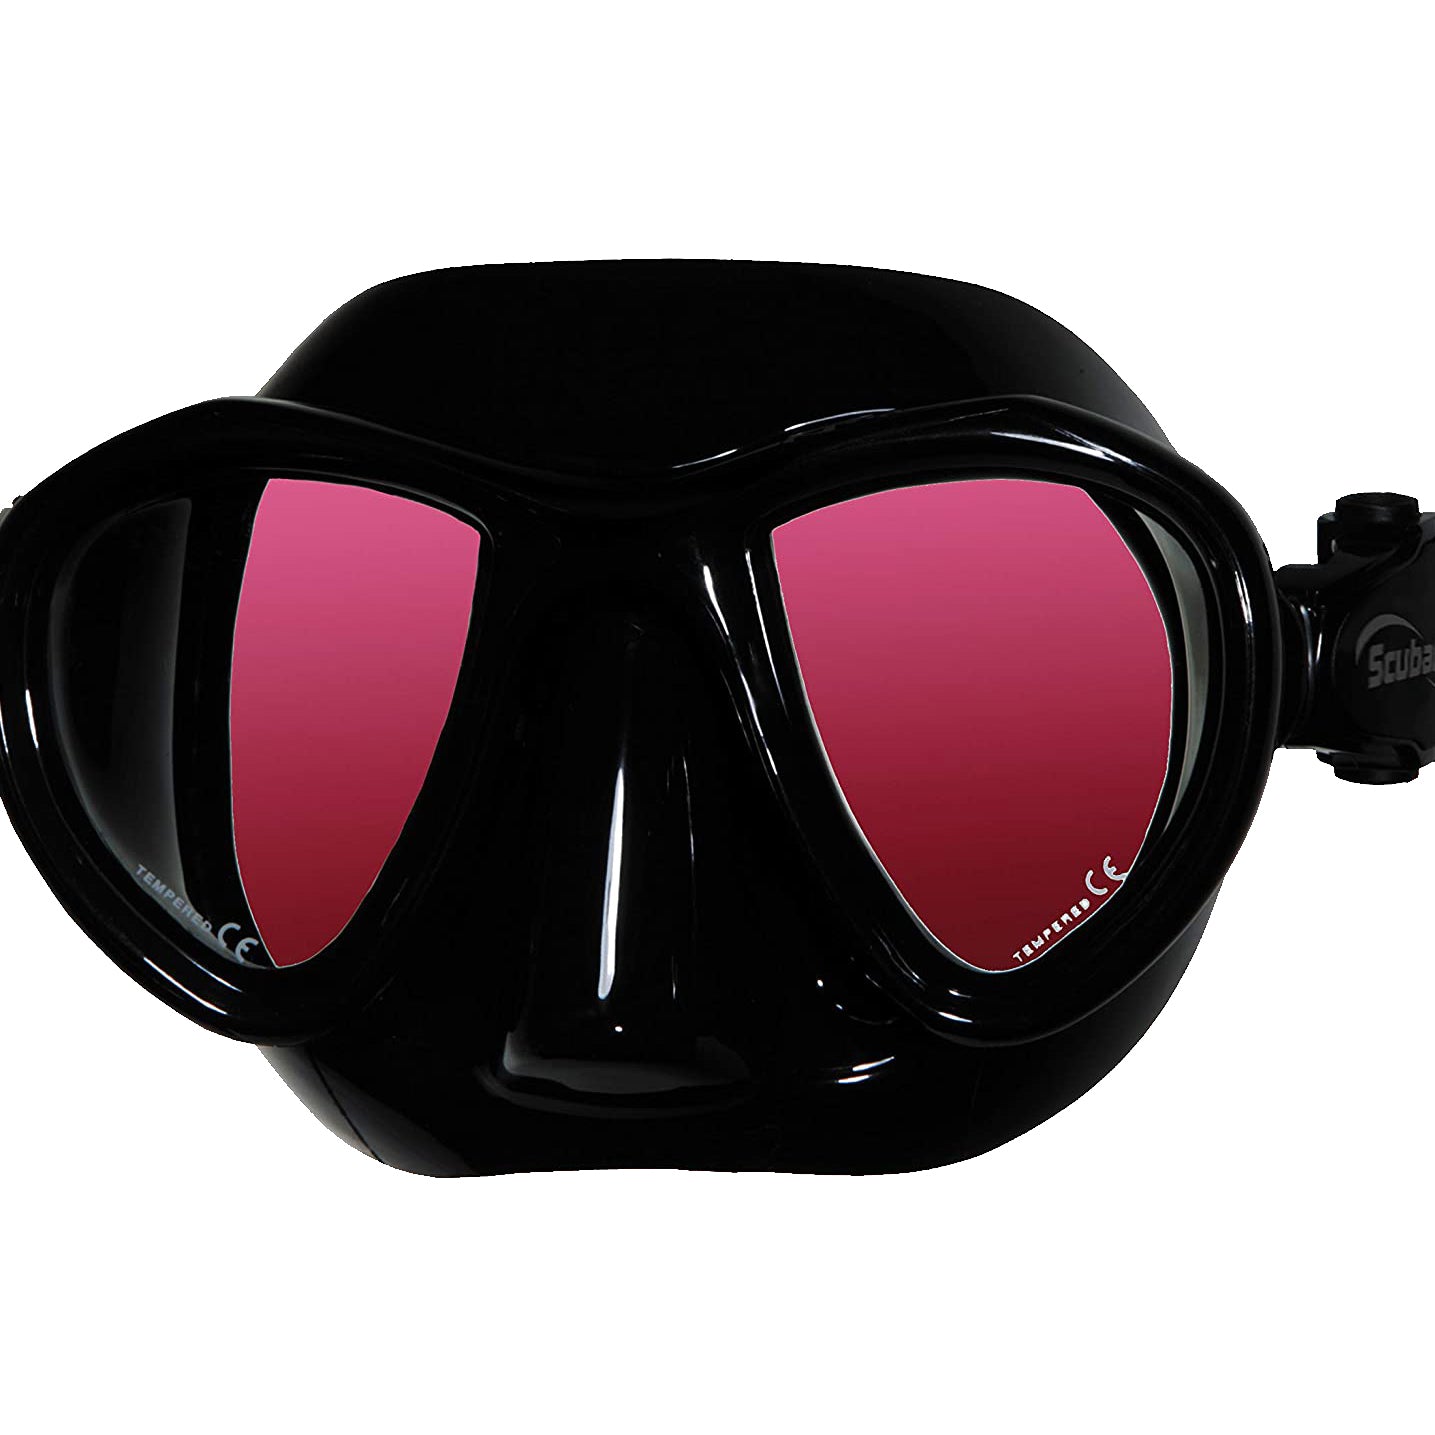 Scuba Max Aria Color Mask Light Pink-Black Silicone